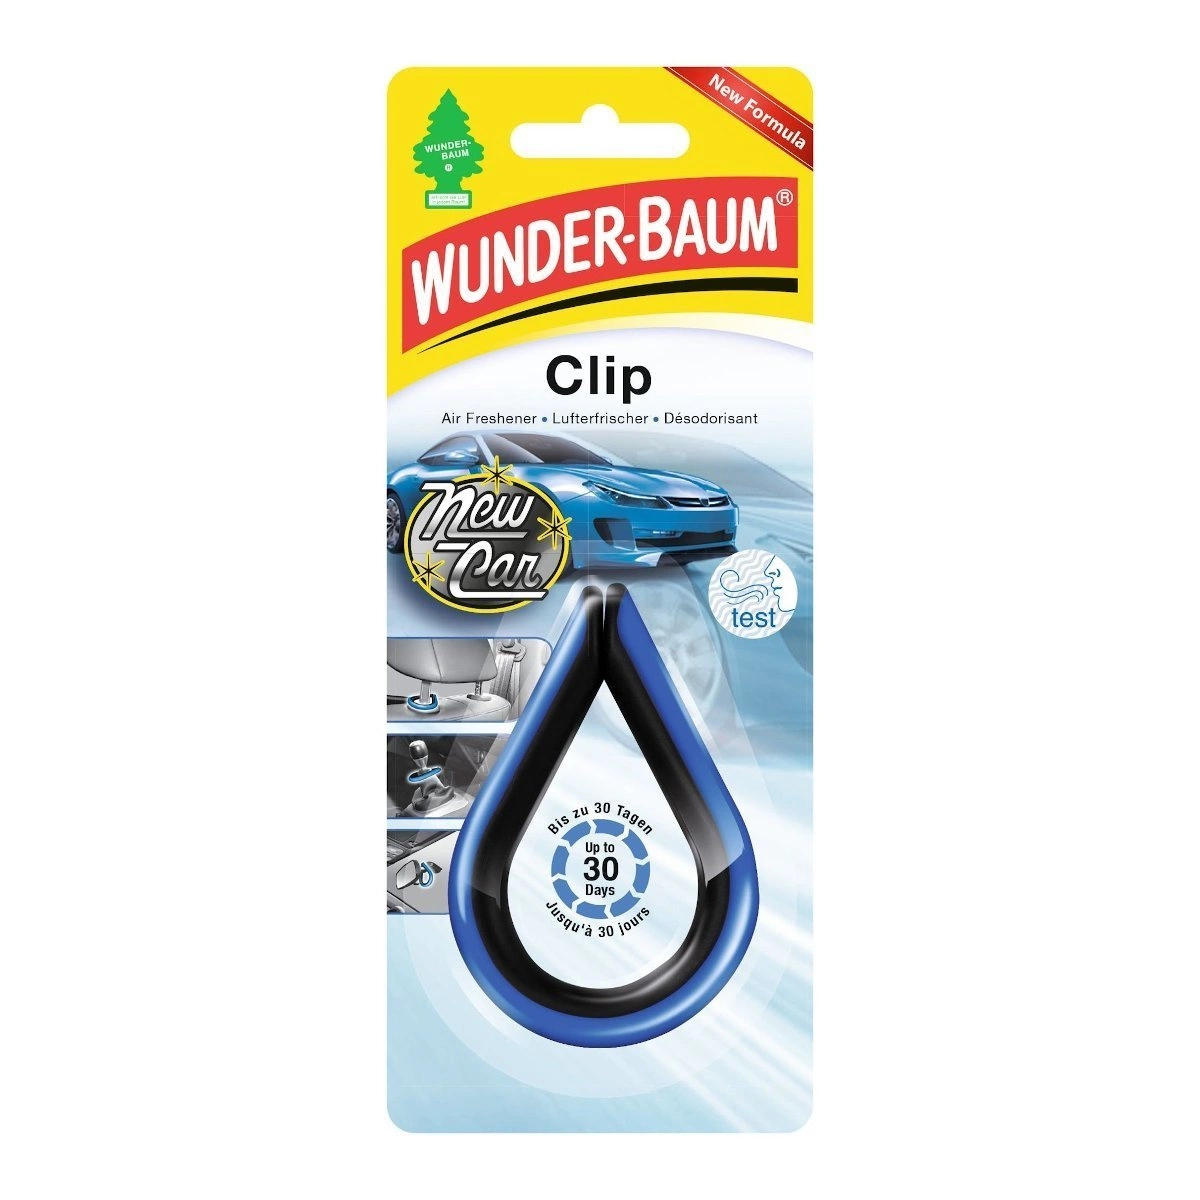 Wunder Baum zapach samochodowy Clip New Car • autokosmetyki •